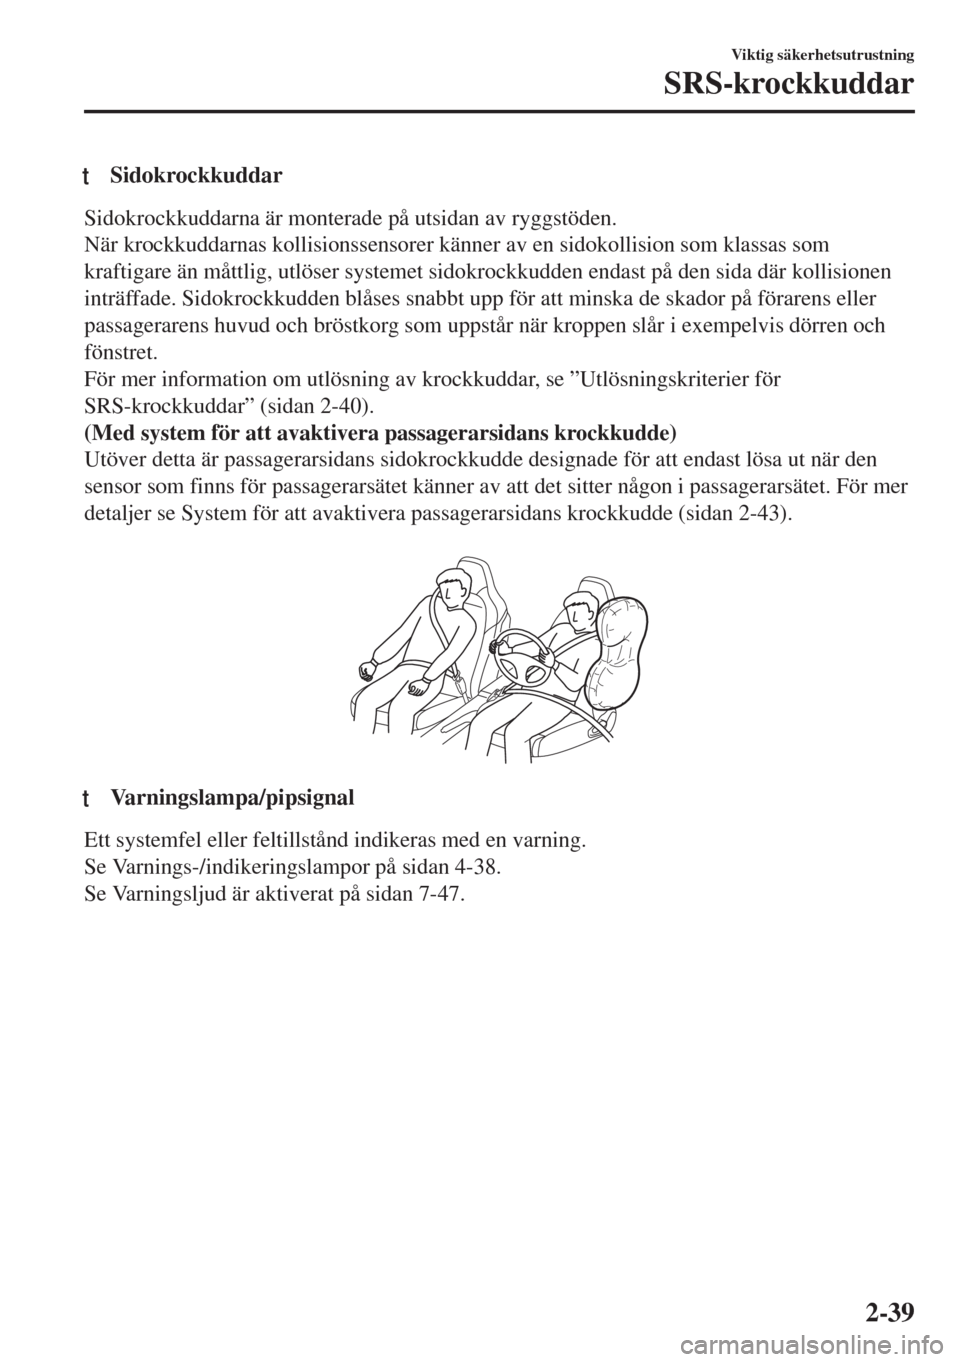 MAZDA MODEL MX-5 2017  Ägarmanual (in Swedish) tSidokrockkuddar
Sidokrockkuddarna är monterade på utsidan av ryggstöden.
När krockkuddarnas kollisionssensorer känner av en sidokollision som klassas som
kraftigare än måttlig, utlöser system